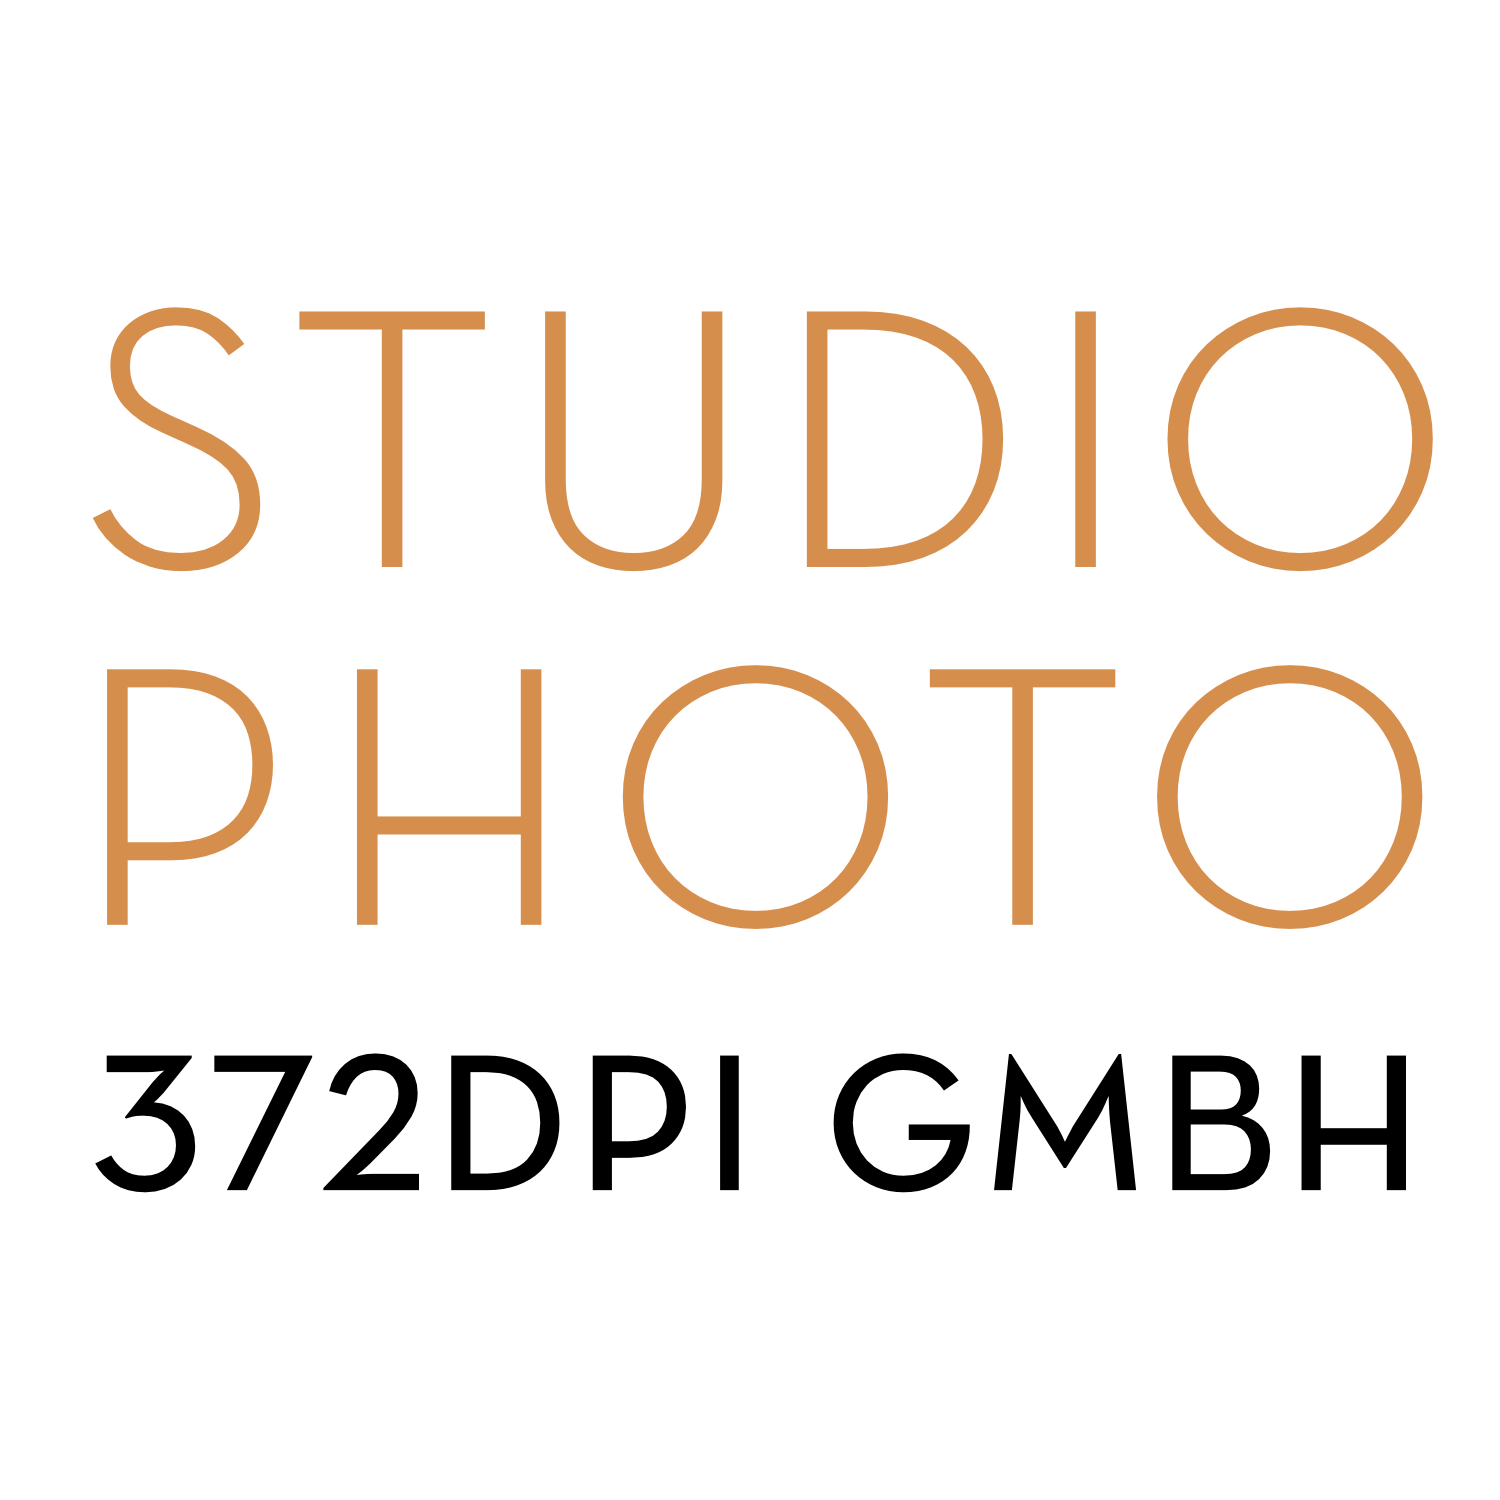 STUDIO PHOTO - 372dpi gmbh Logo